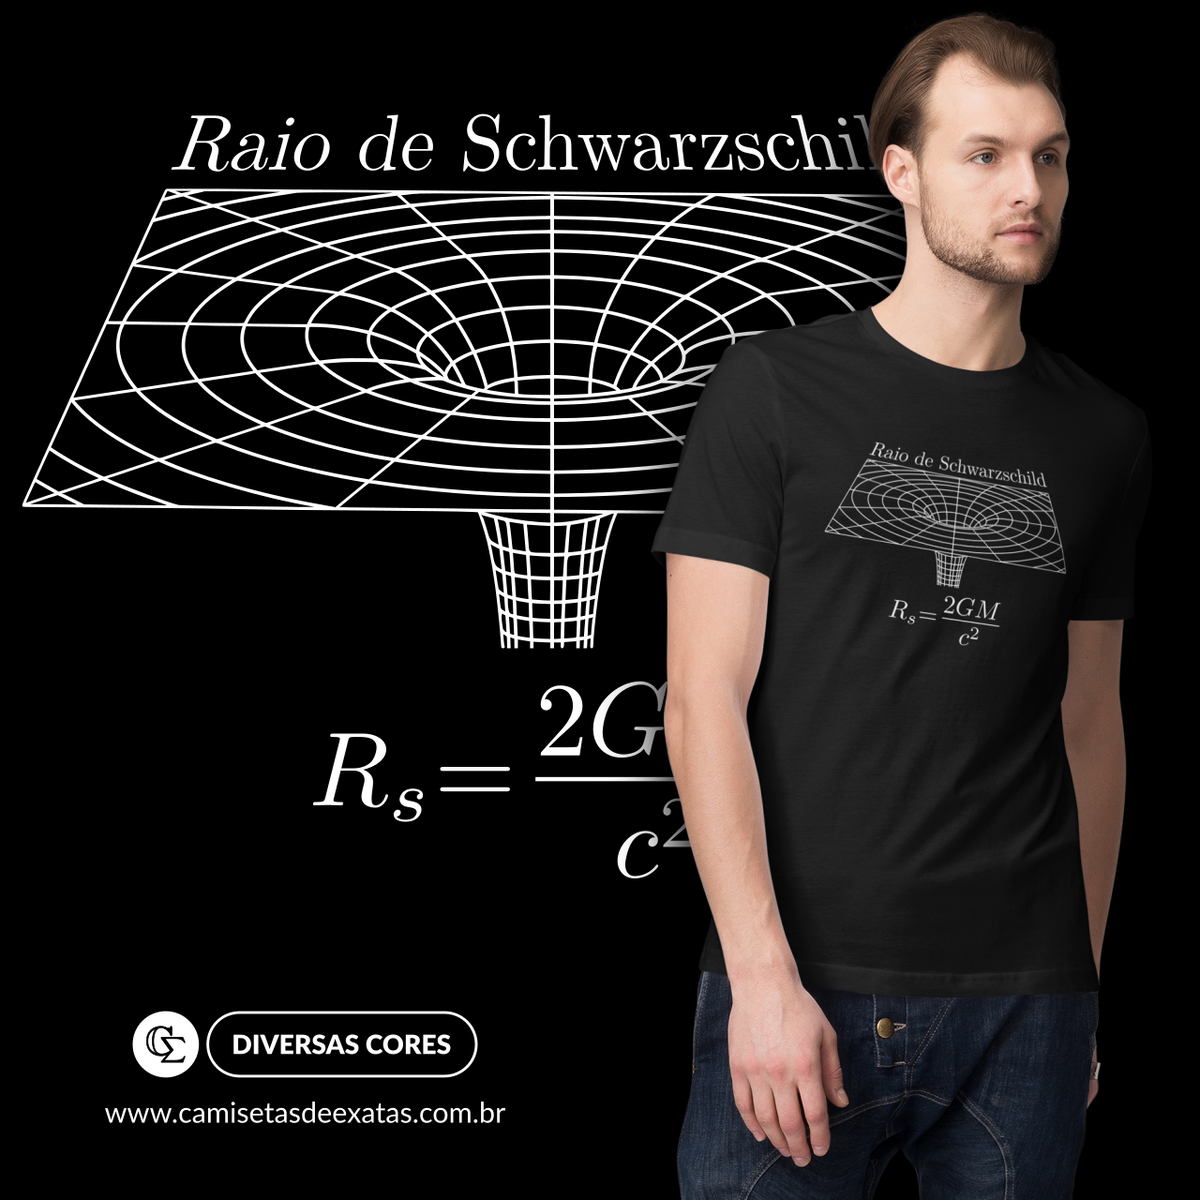 Nome do produto: RAIO DE SCHWARZSCHILD [2]